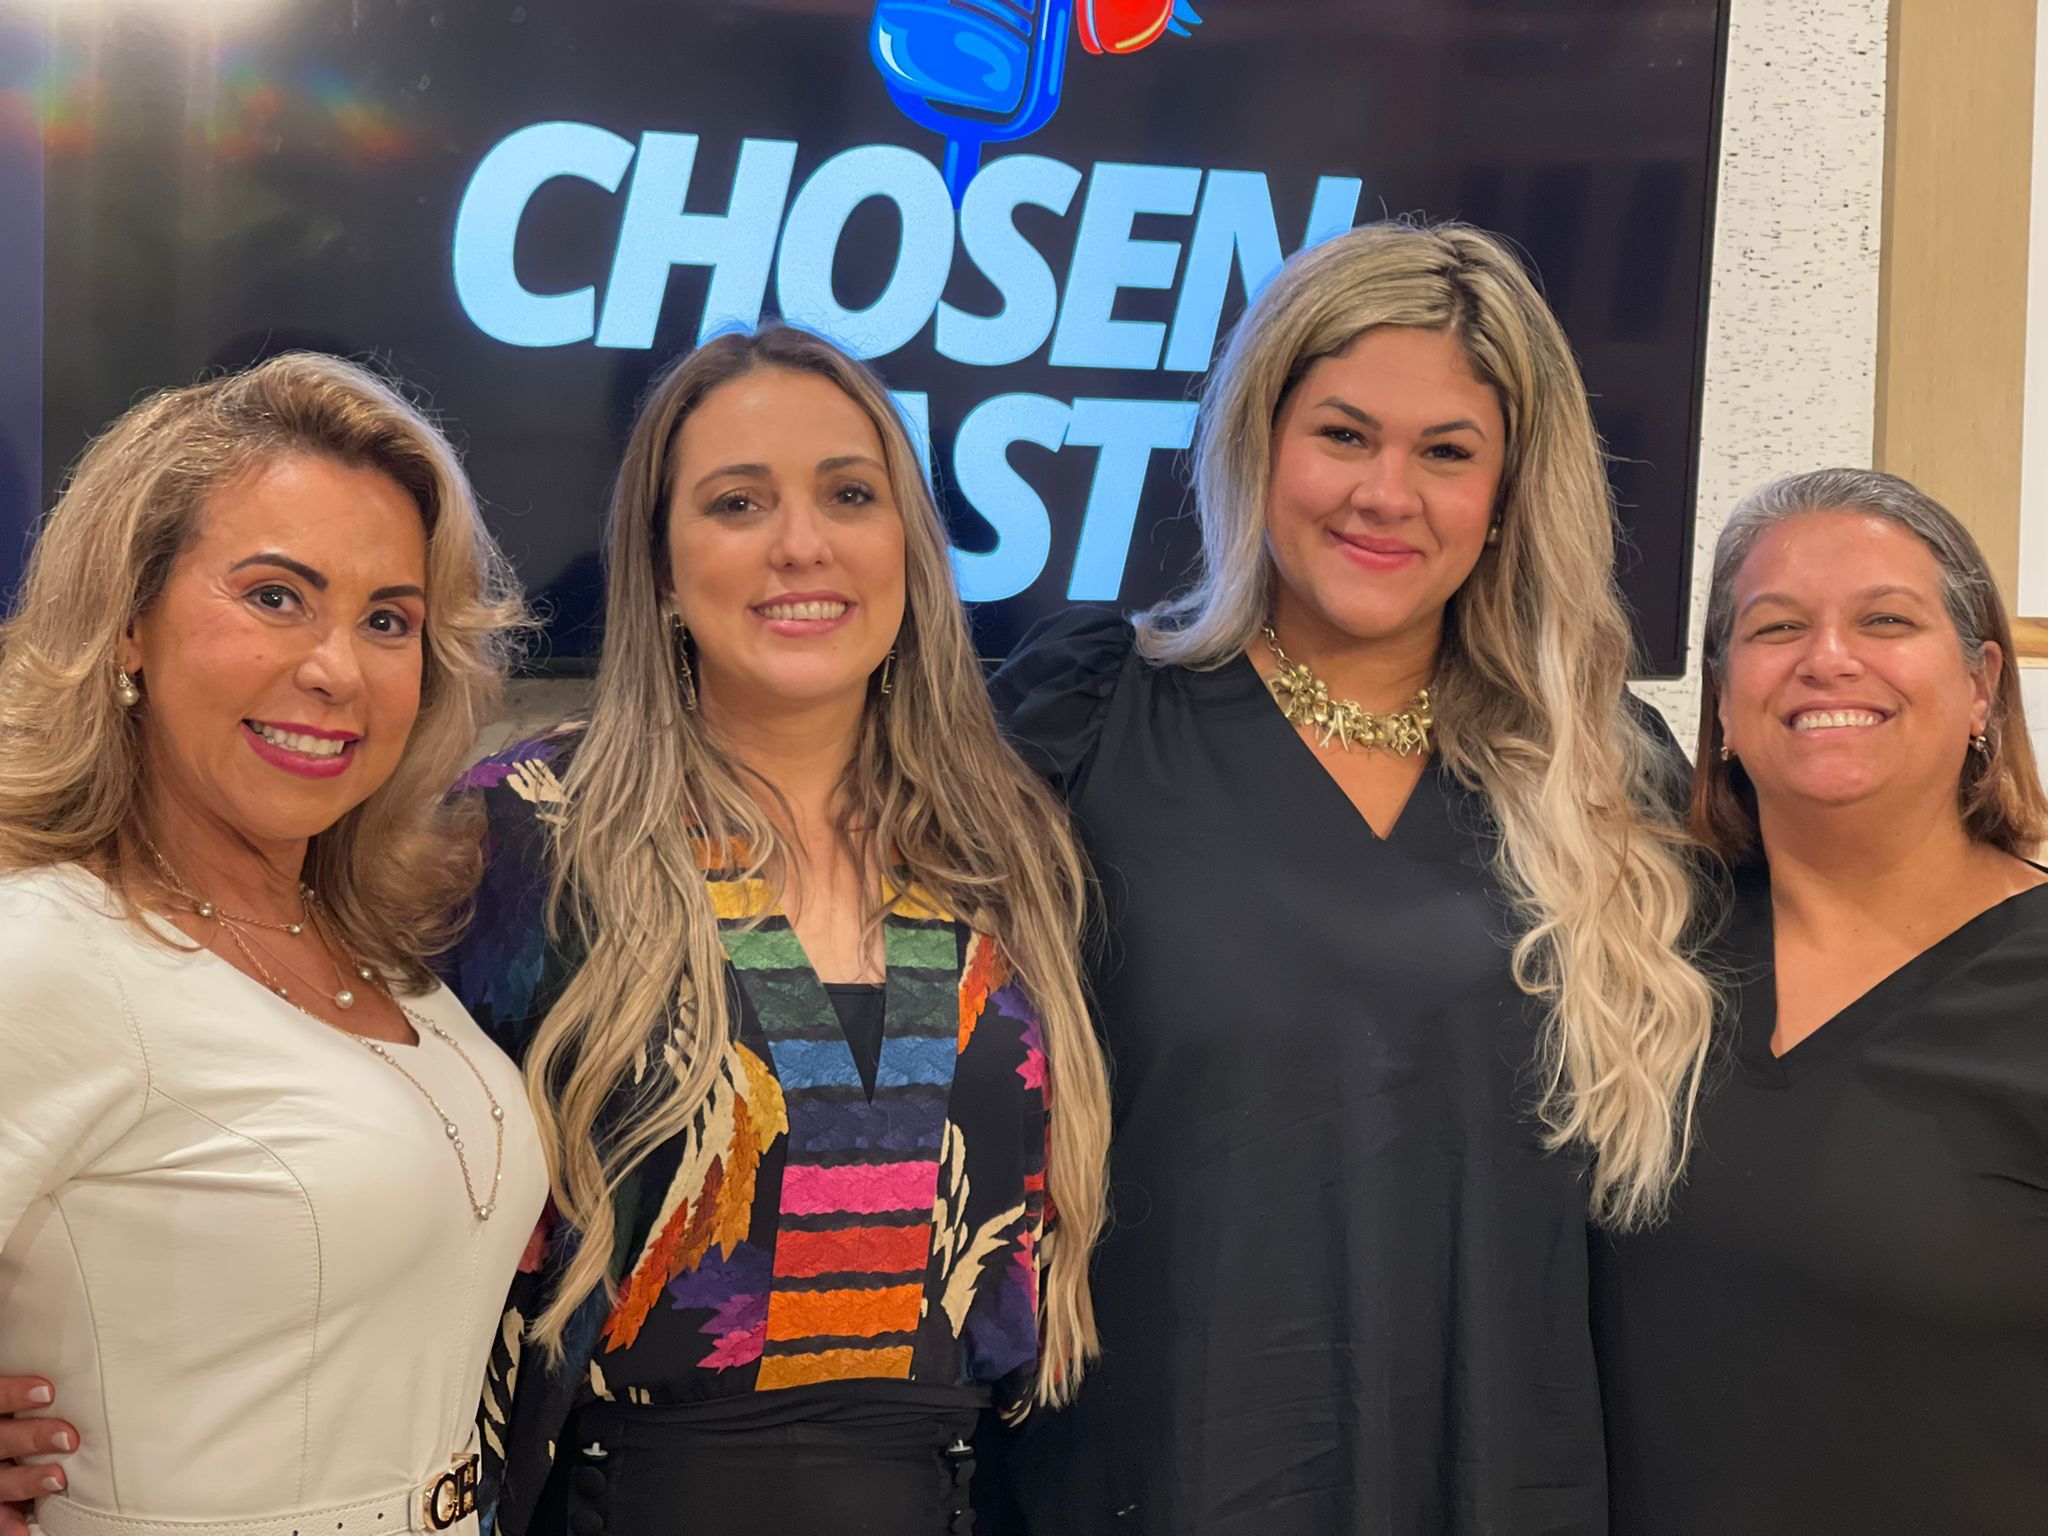 Lançamento do “Chosen Cast” em Orlando reúne convidados e influenciadores digitais